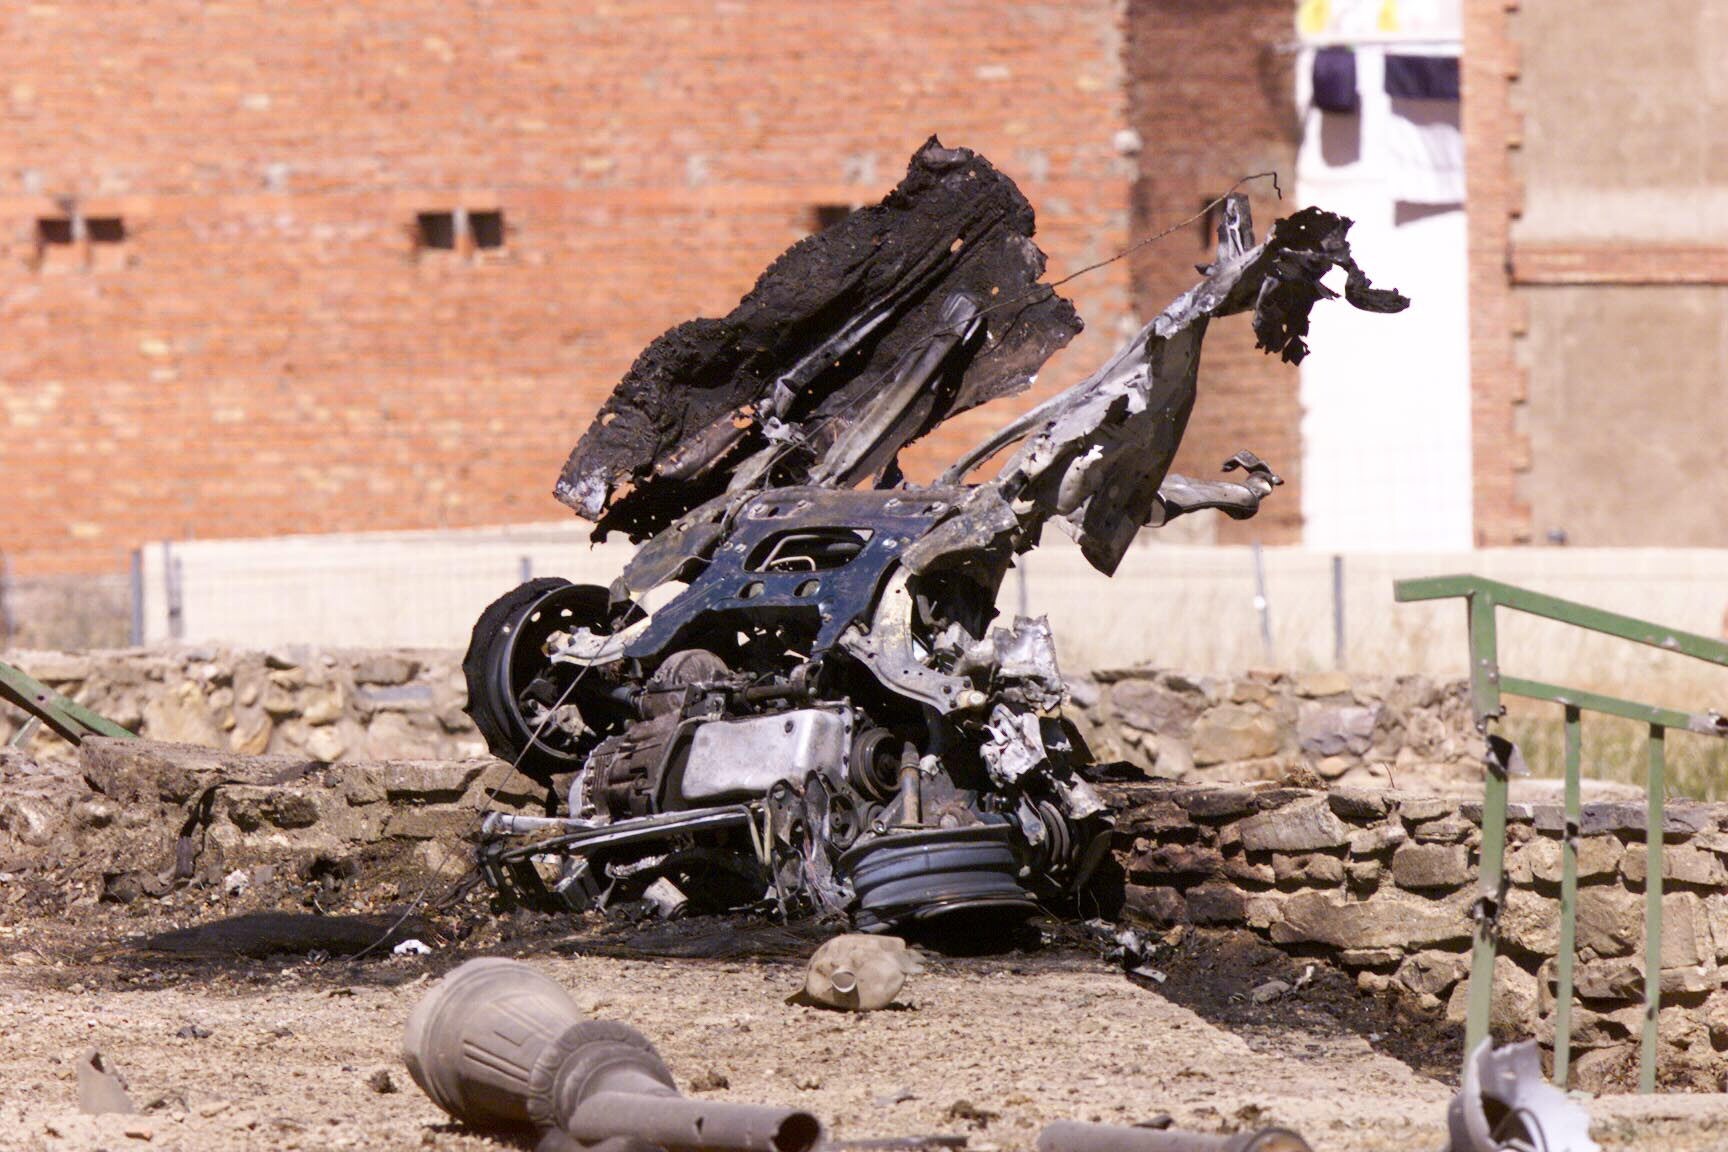 16 de julio del 2000: ETA hace explotar un coche bomba junto a la Casa Cuartel de Ágreda, en Soria. Sólo produjo heridas leves a una persona, la mujer de un agente del cuartel